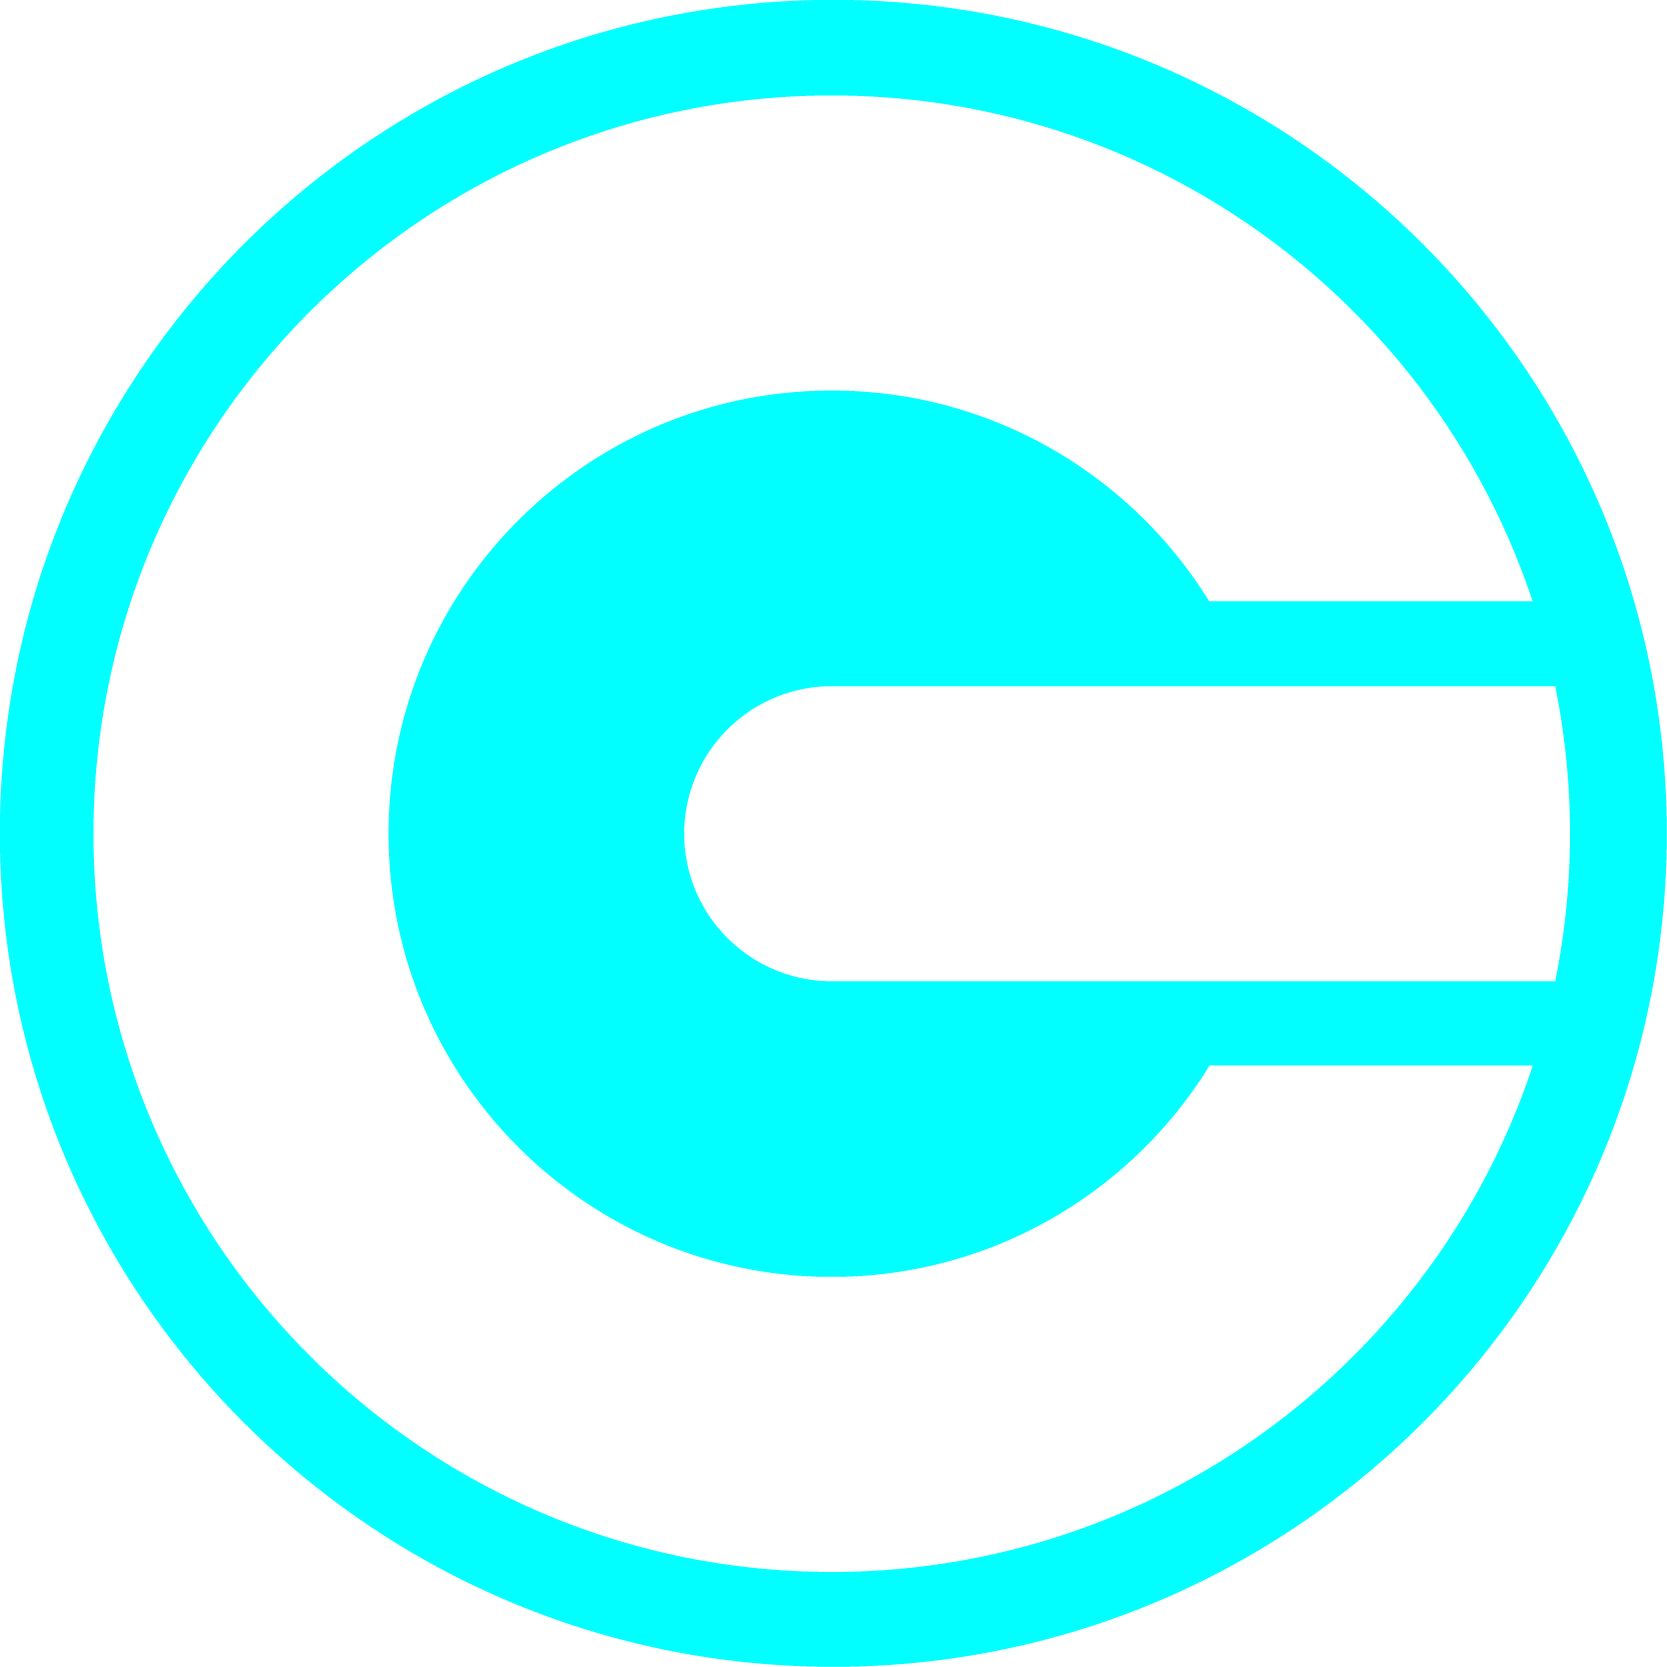 codegov logo